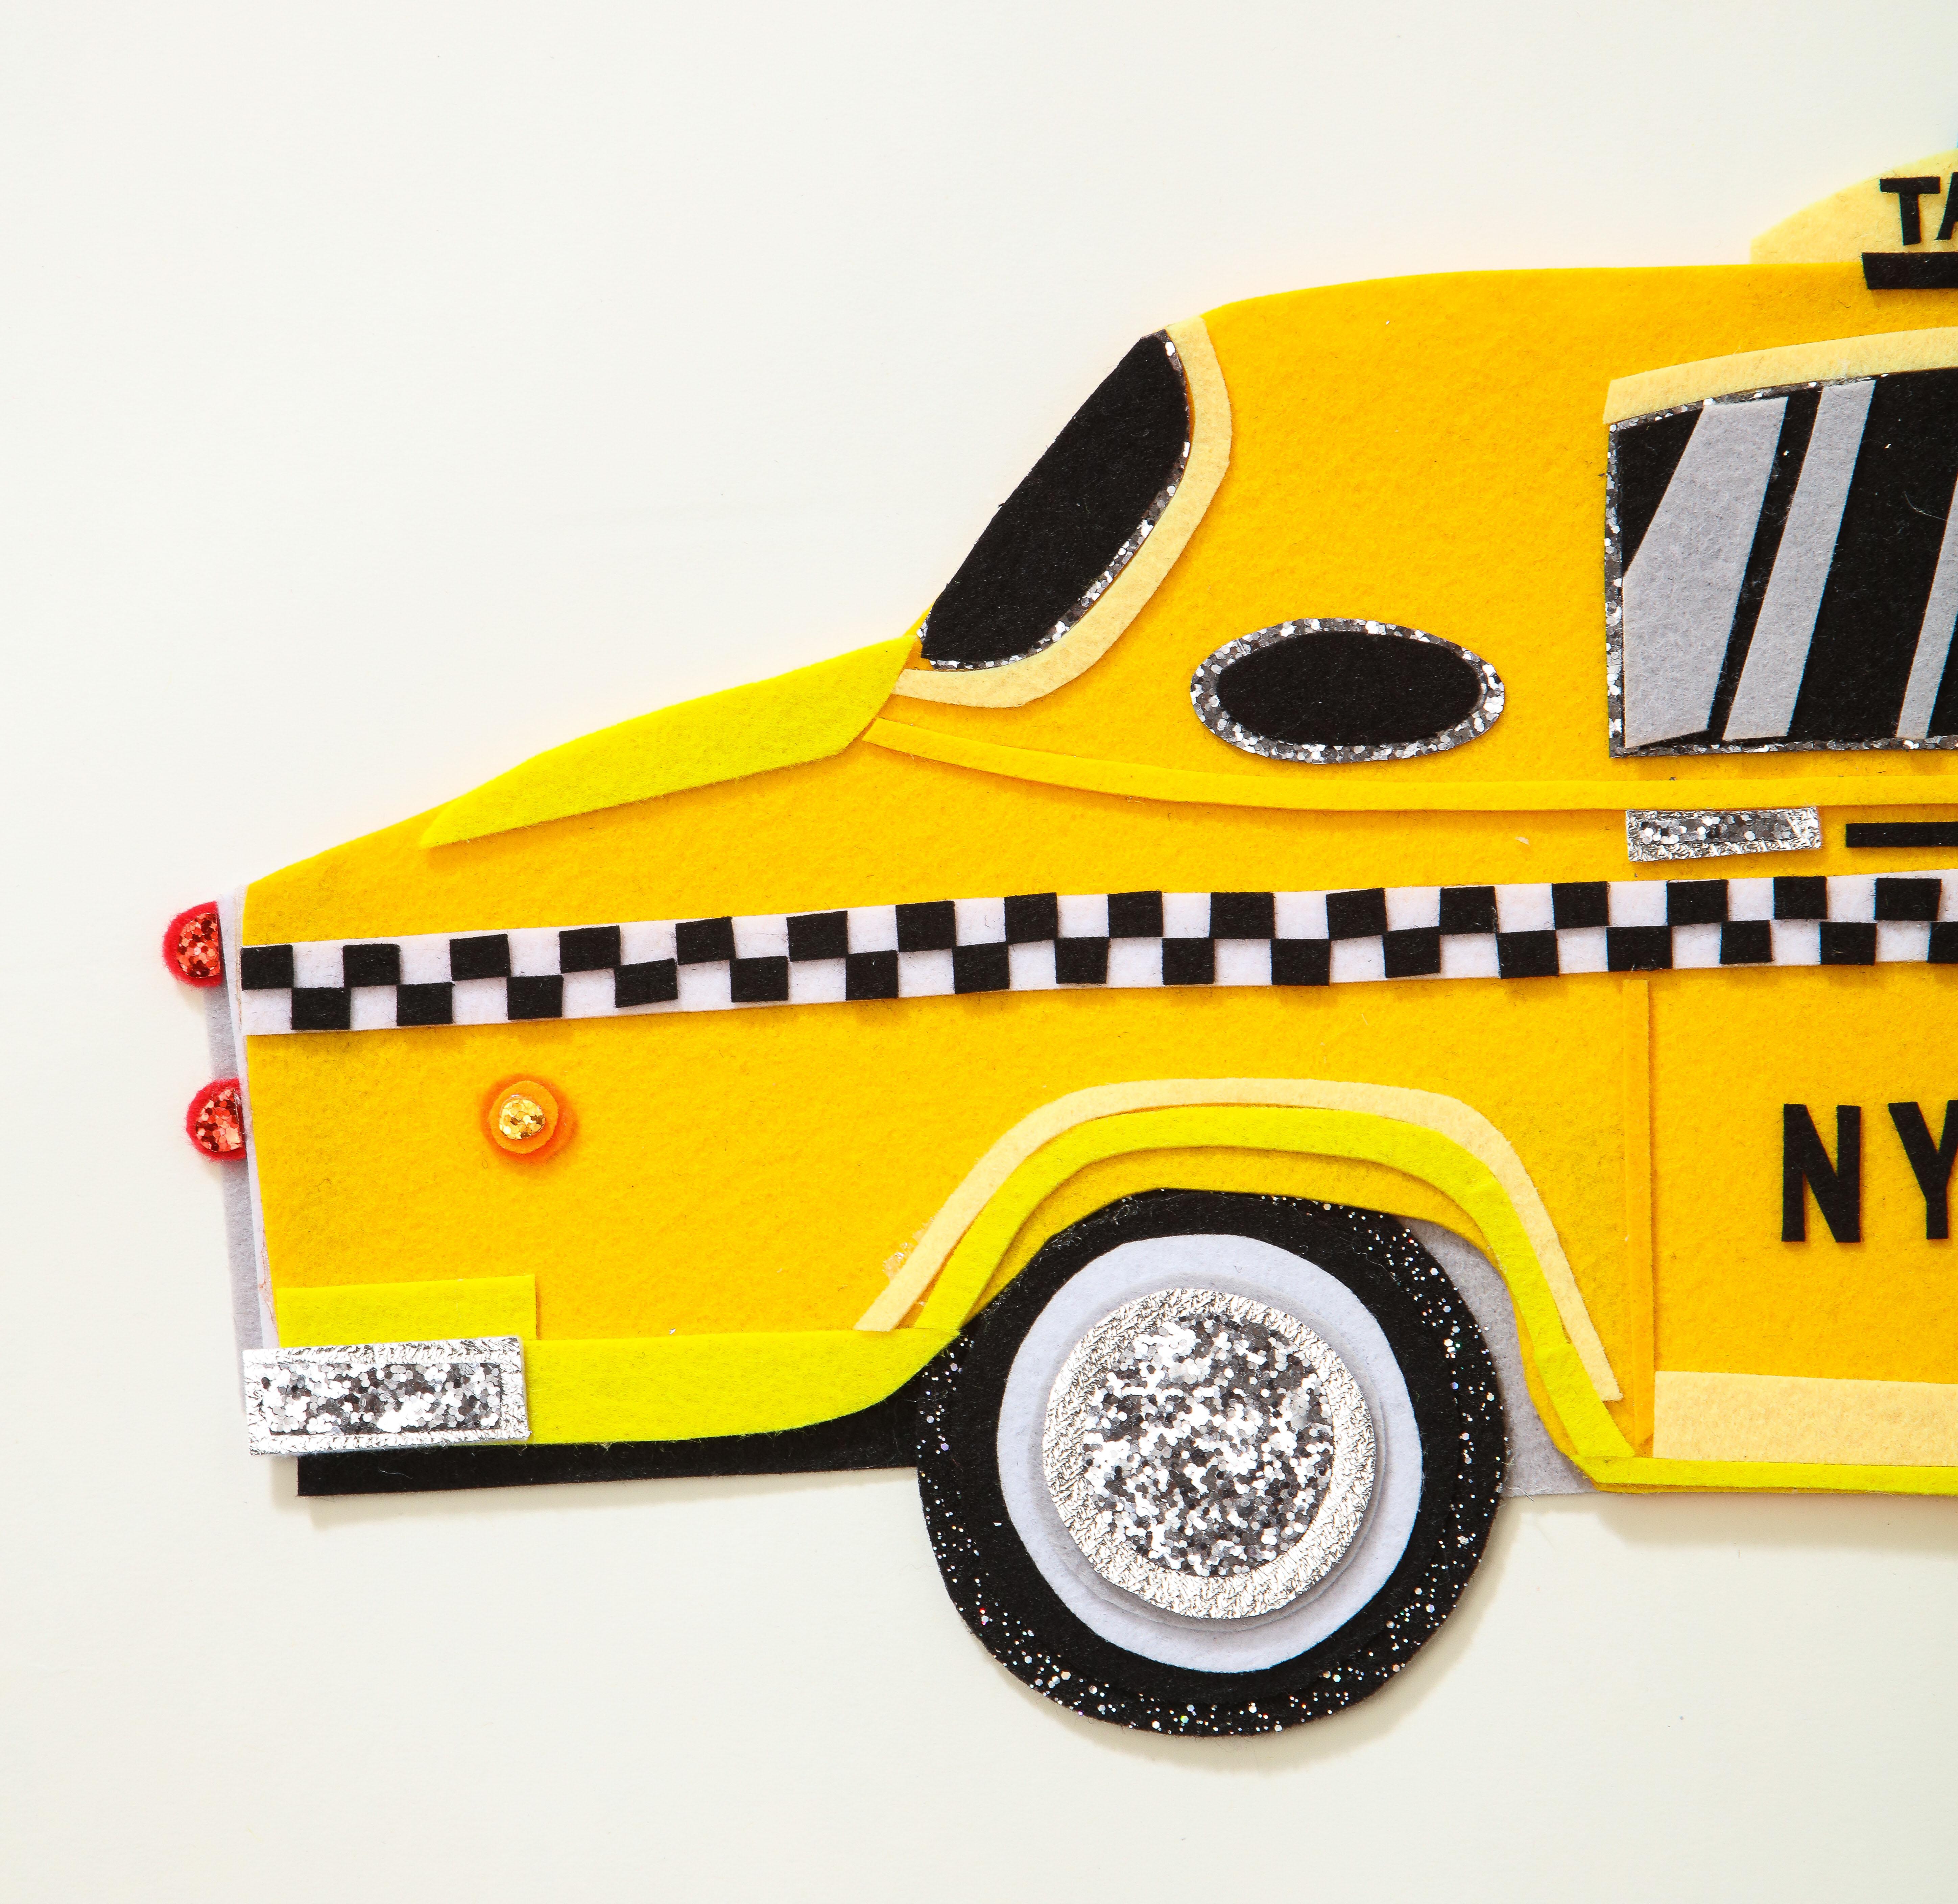 Original Sam Sidney Filzcollage, die ein altmodisches NYC-Taxi darstellt.  Die Filzcollage ist auf säurefreiem Karton in einem weiß gestrichenen Schattenboxrahmen montiert. Unterzeichnet und datiert.

Zuvor ausgestellt bei Eerdmans New York für die